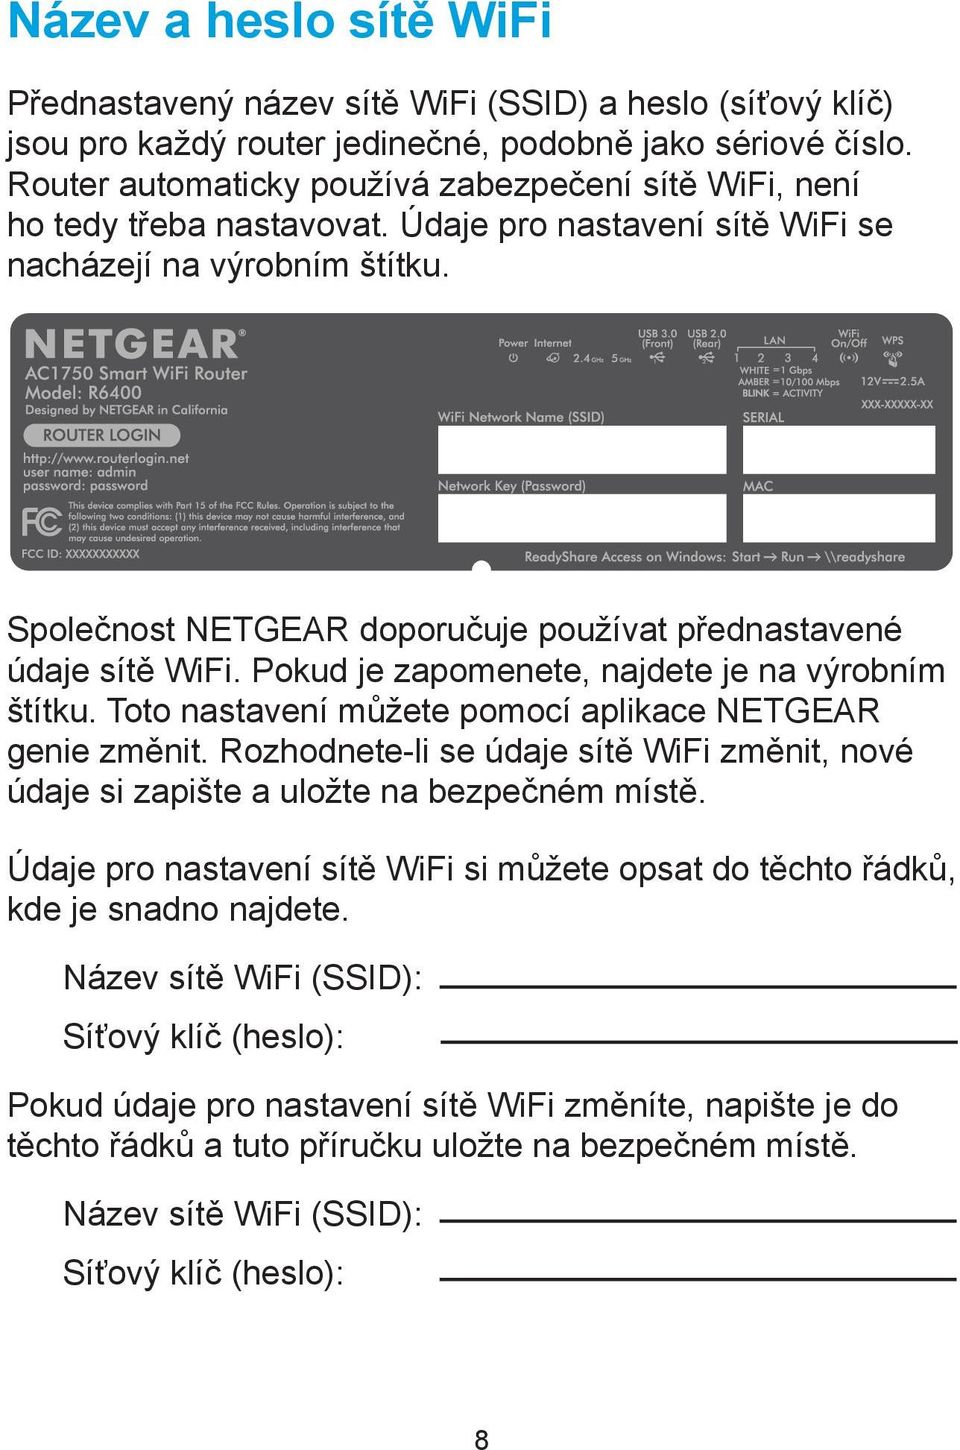 Společnost NETGEAR doporučuje používat přednastavené údaje sítě WiFi. Pokud je zapomenete, najdete je na výrobním štítku. Toto nastavení můžete pomocí aplikace NETGEAR genie změnit.